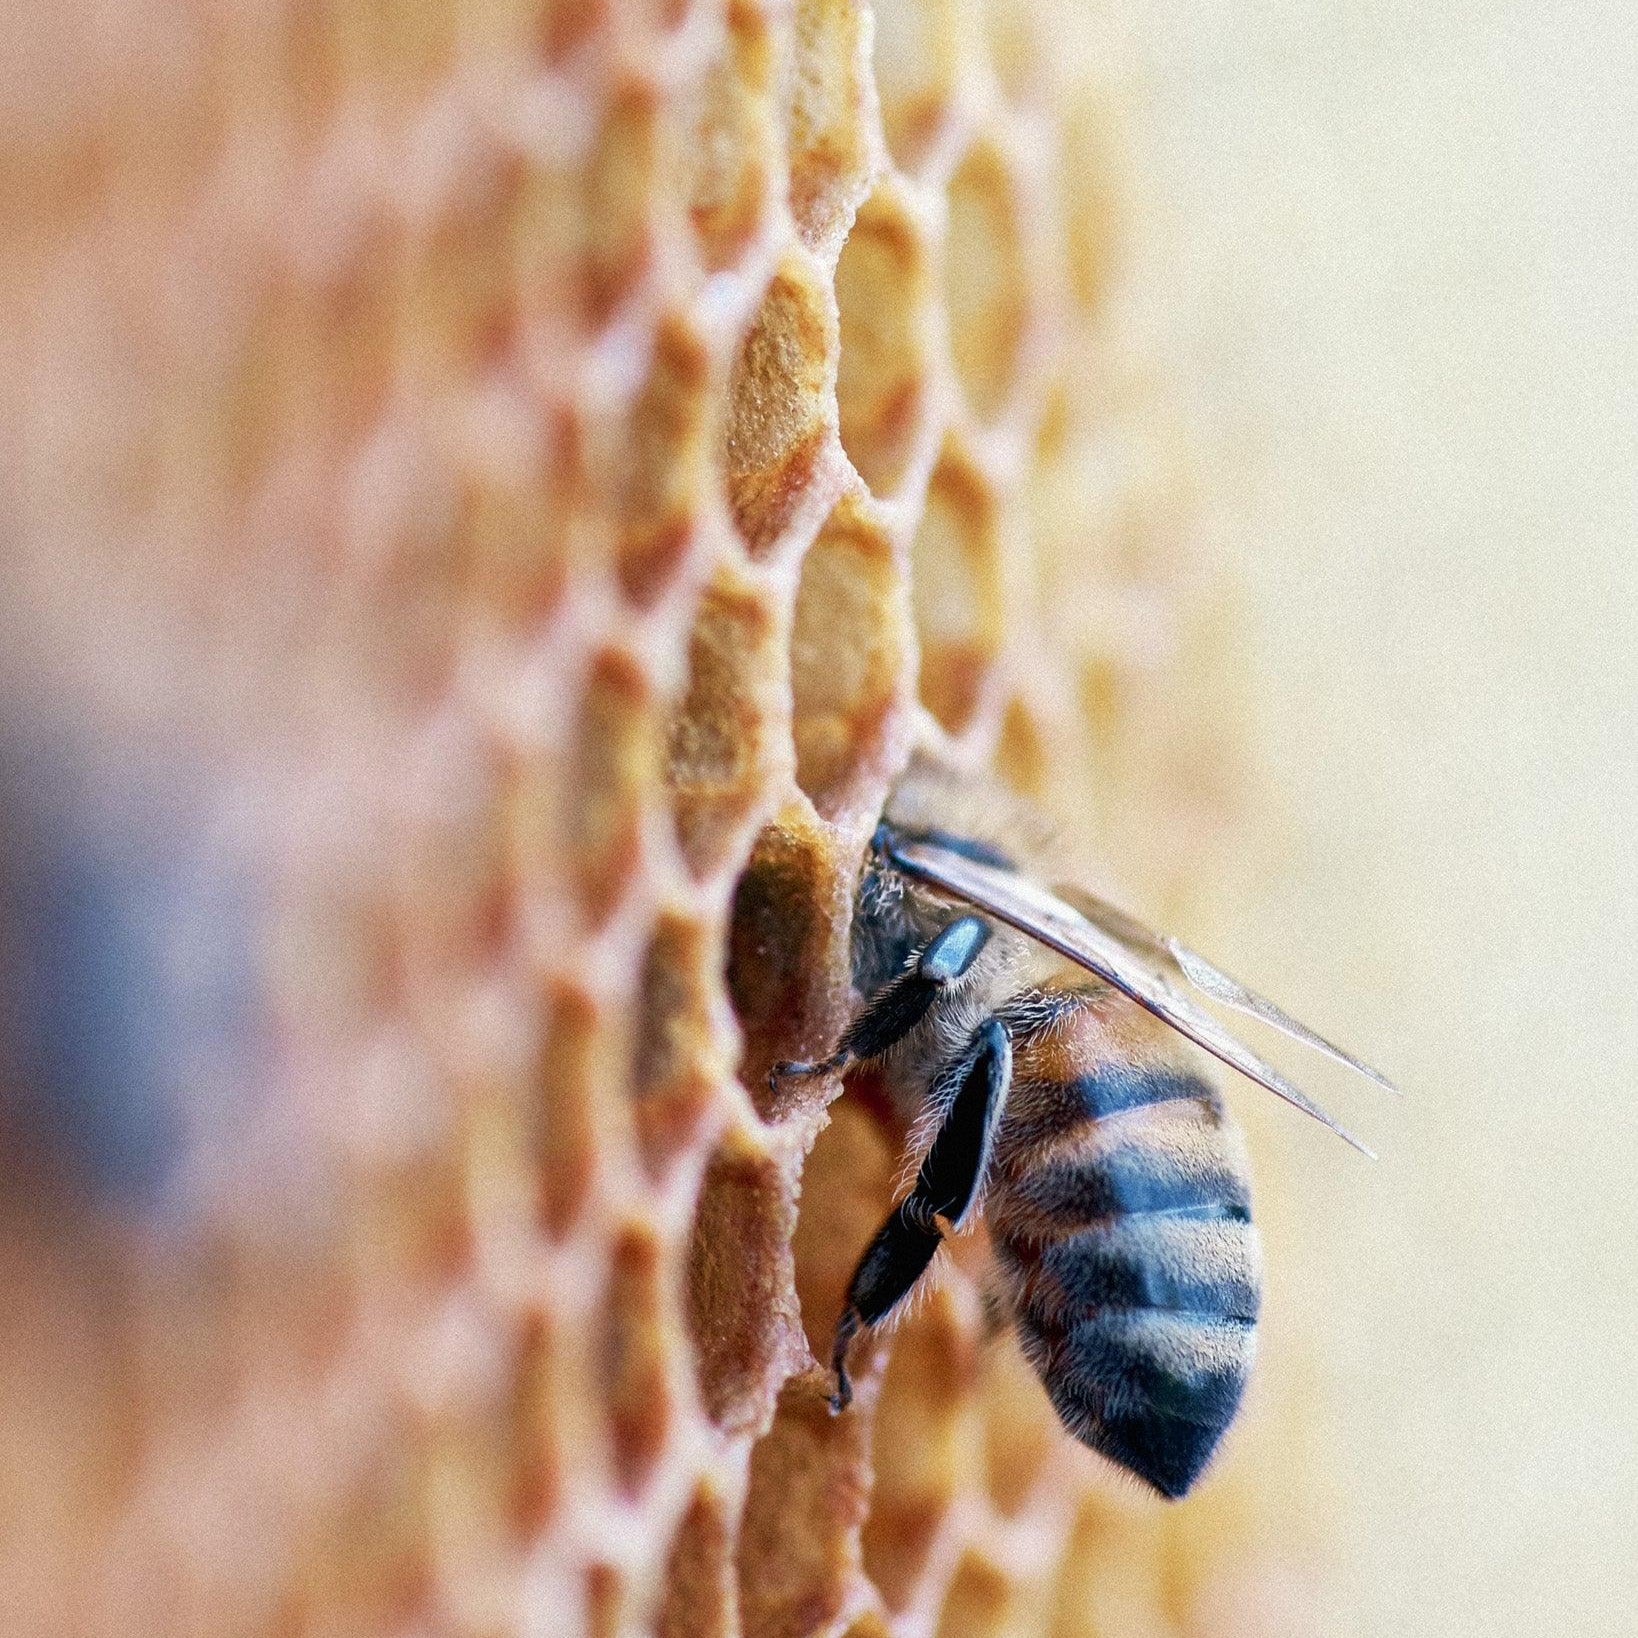 Včely a produkce medu: Různé druhy medu, regionální rozdíly, sběr a zpracování medu - Davidova ekologická včelí farma